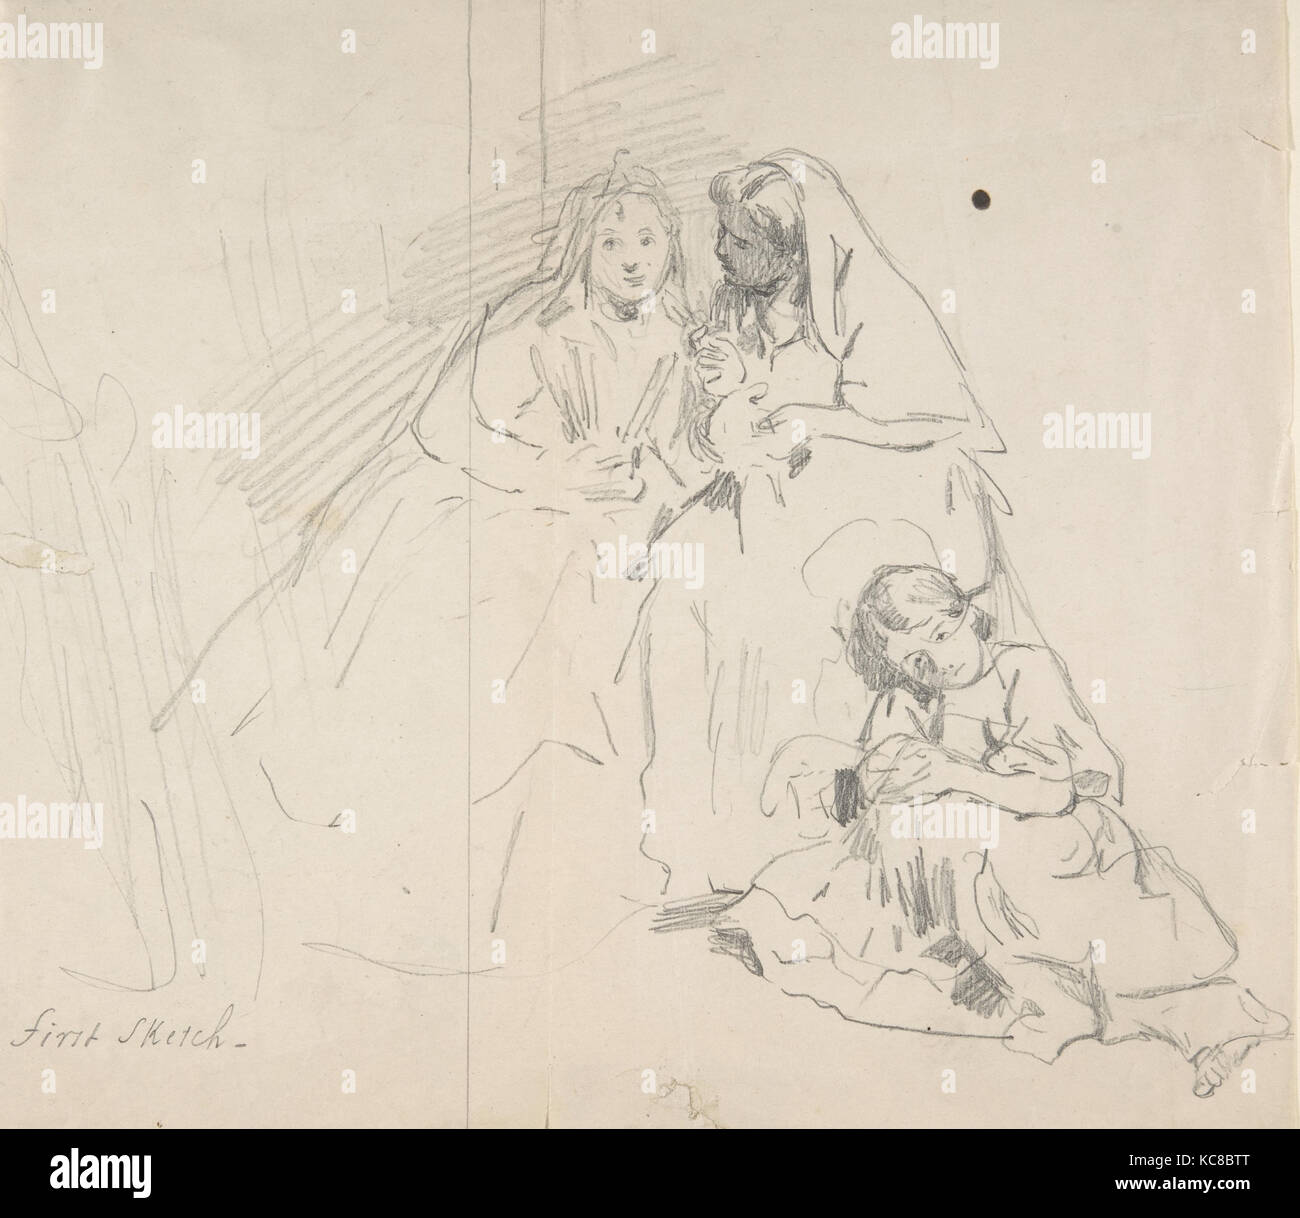 Croquis de deux femmes assises avec jeune fille assise à leurs pieds ; Verso : Esquisse d'une femme, Charles Baugniet, 1830-86 Banque D'Images